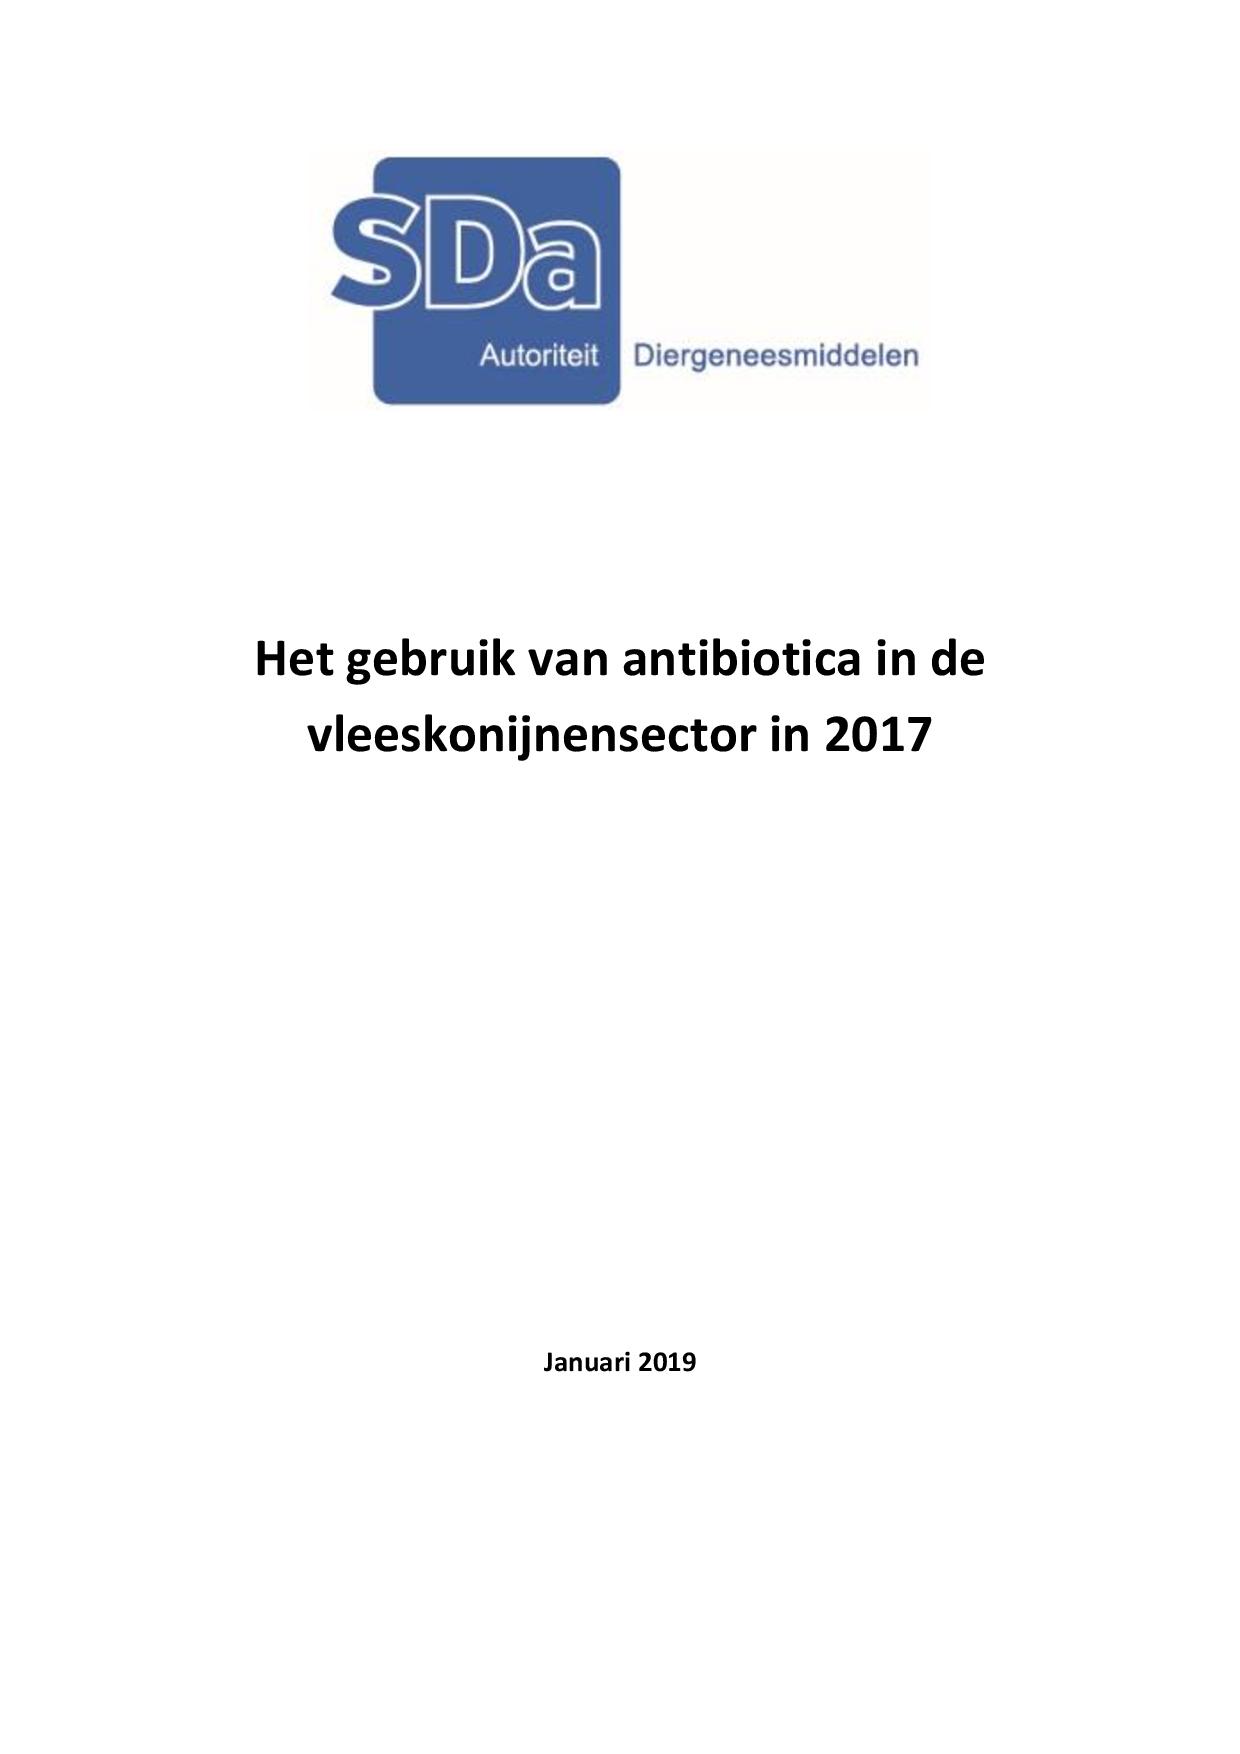 SDa-notitie 'antibioticumgebruik vleeskonijnensector in 2017'